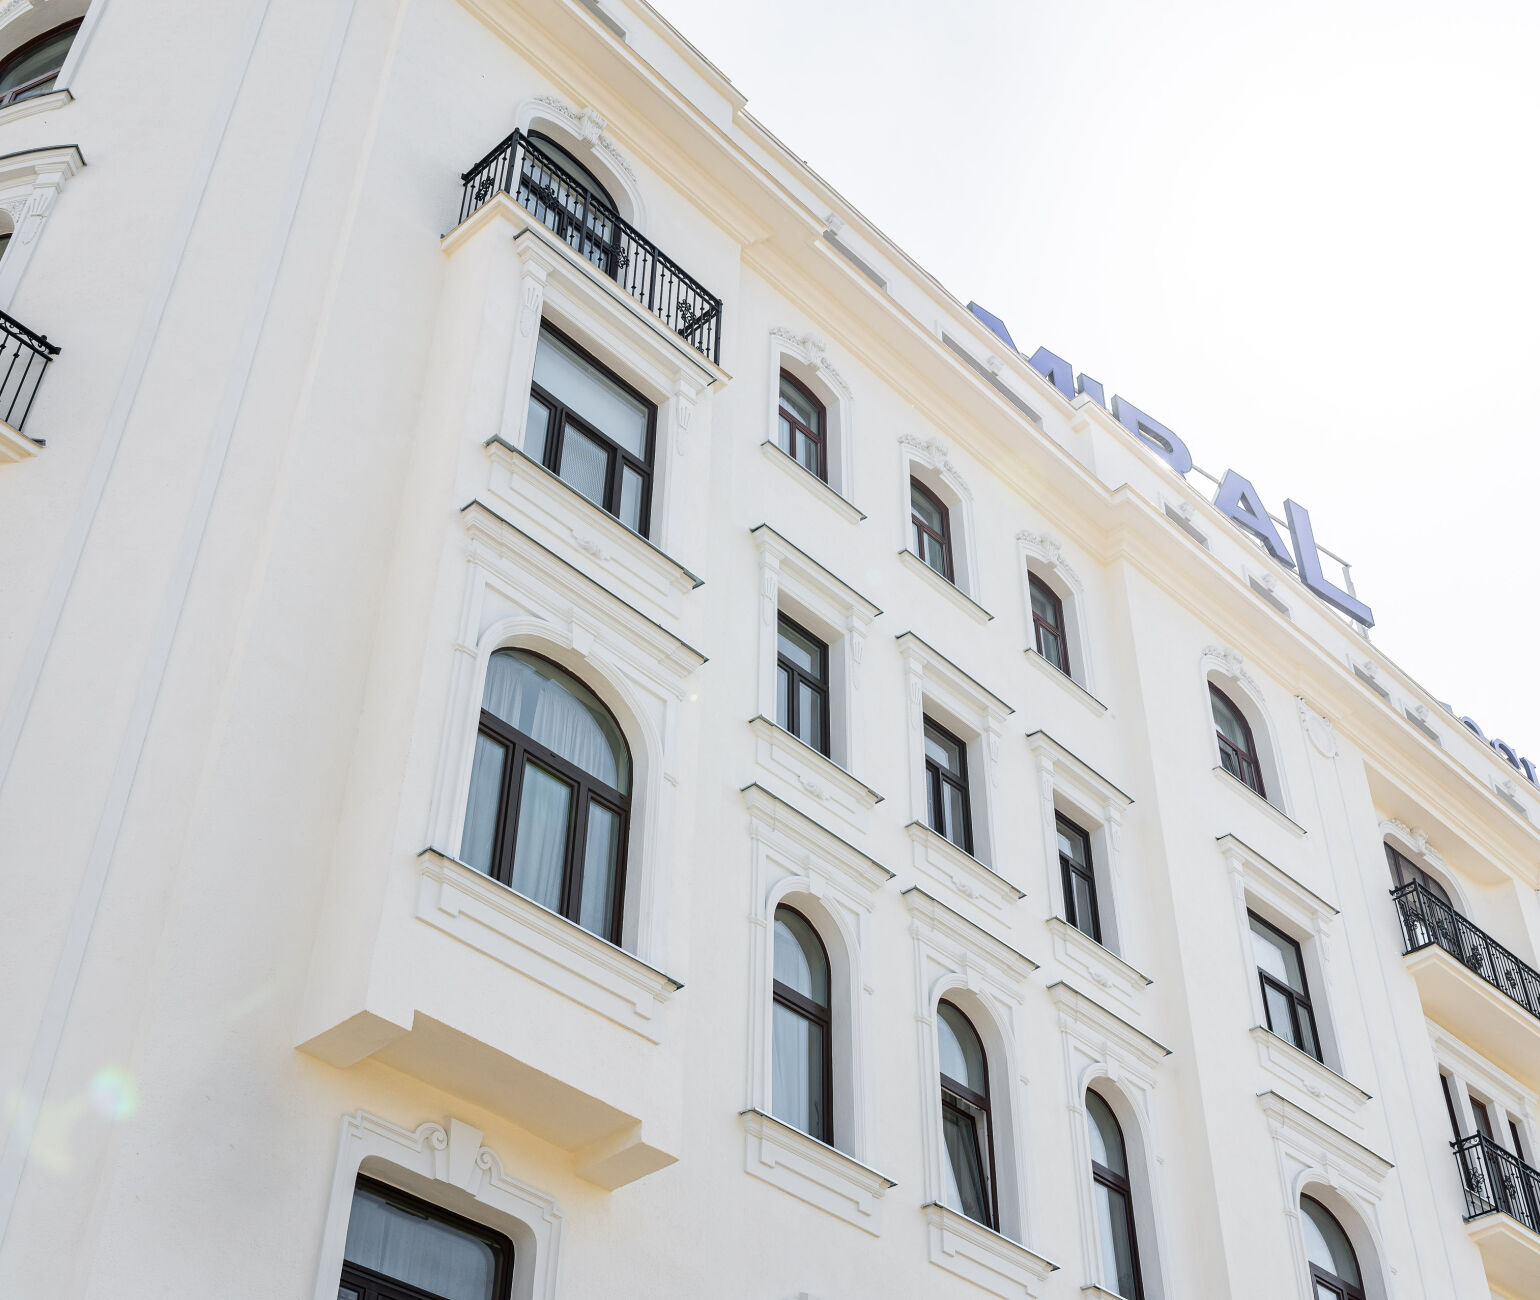 An der vormals nahezu schmucklosen, gürtelseitig ausgerichteten Fassade wurde handgefertigter Stuck, Quaderungen und Lisenen neu angebracht sowie Balkongeländer im Stil Alt-Wien erneuert.